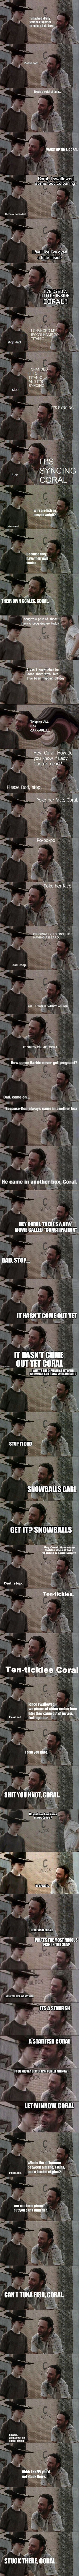 Rick Grimes dad jokes